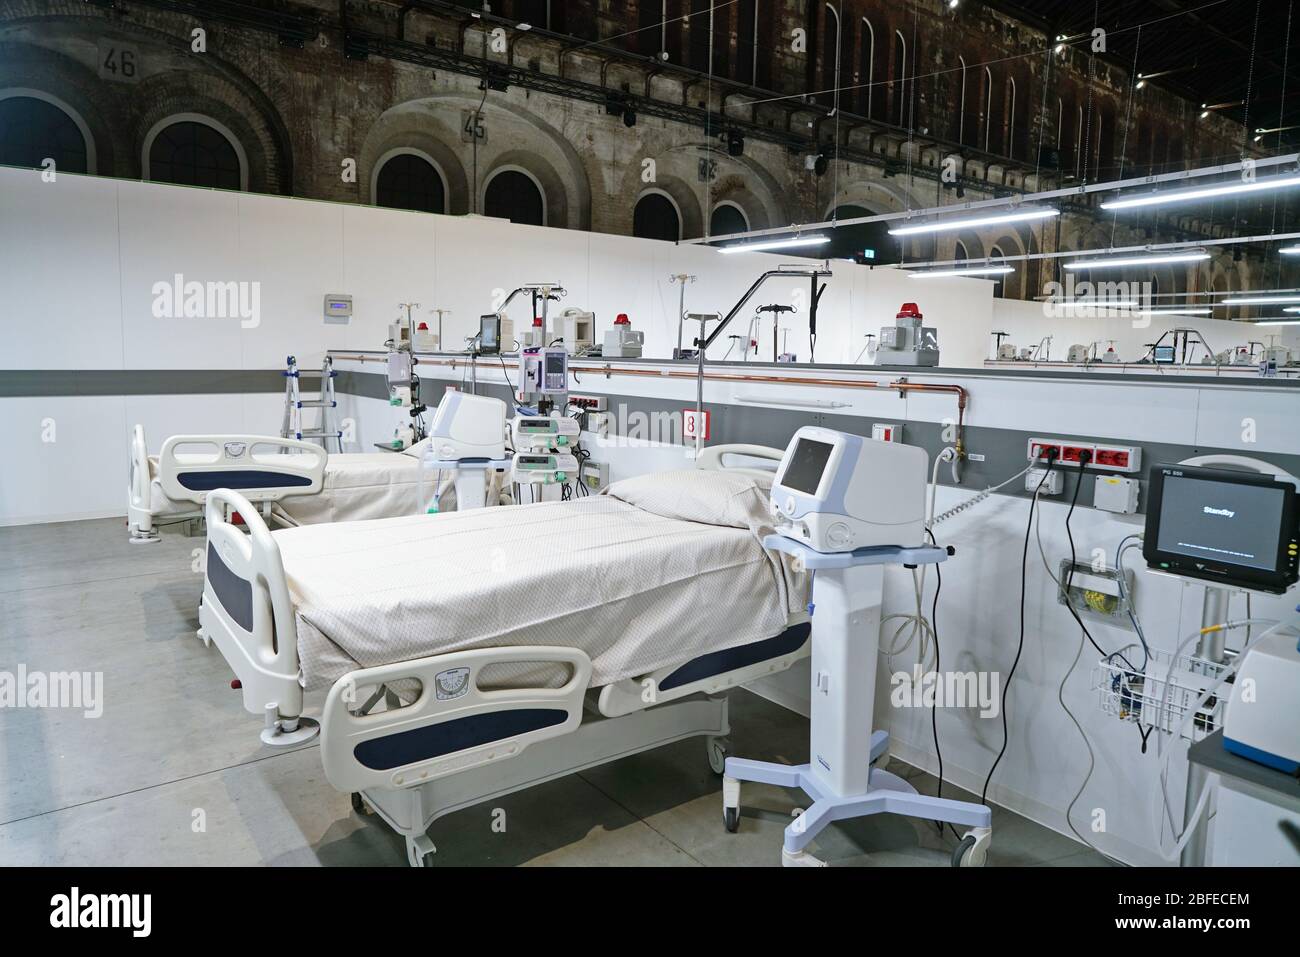 Covid Field Hospital, allestito in un ex impianto industriale, con 90 letti attrezzati per la terapia intensiva del coronavirus. Torino, Italia - Aprile 2020 Foto Stock